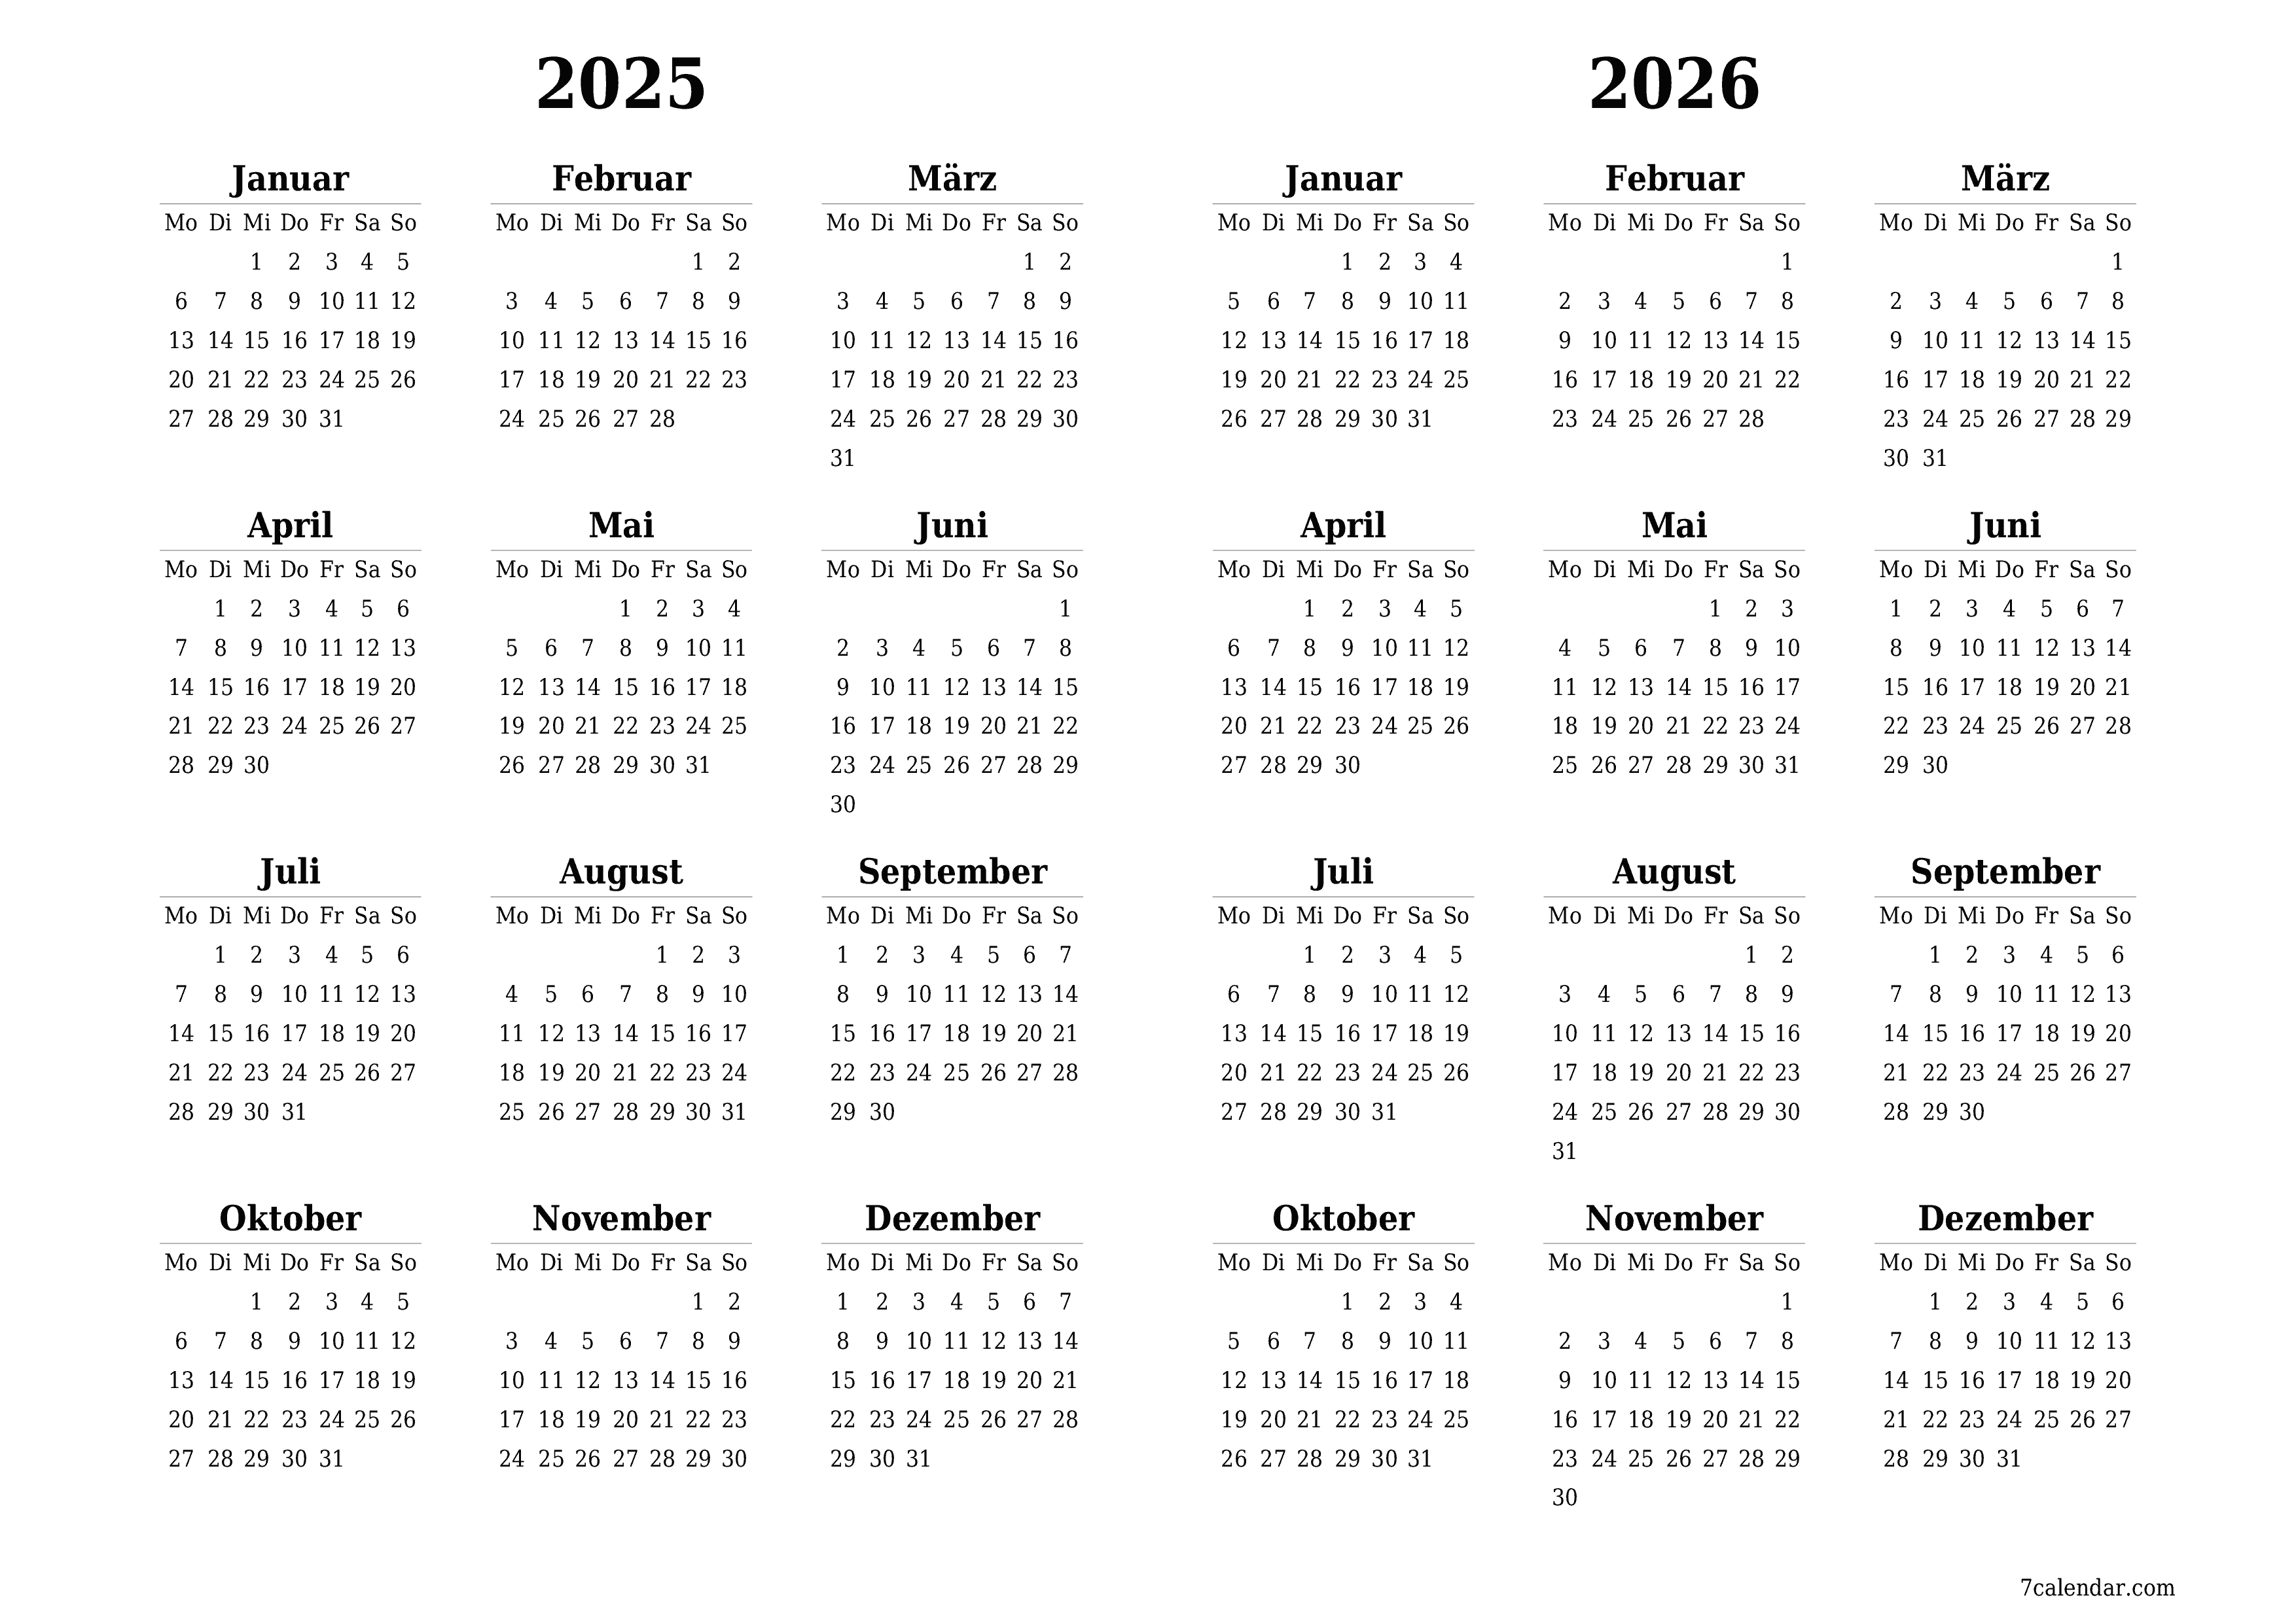 Jahresplanerkalender für das Jahr 2025, 2026 mit Notizen leeren, speichern und als PDF PNG German - 7calendar.com drucken